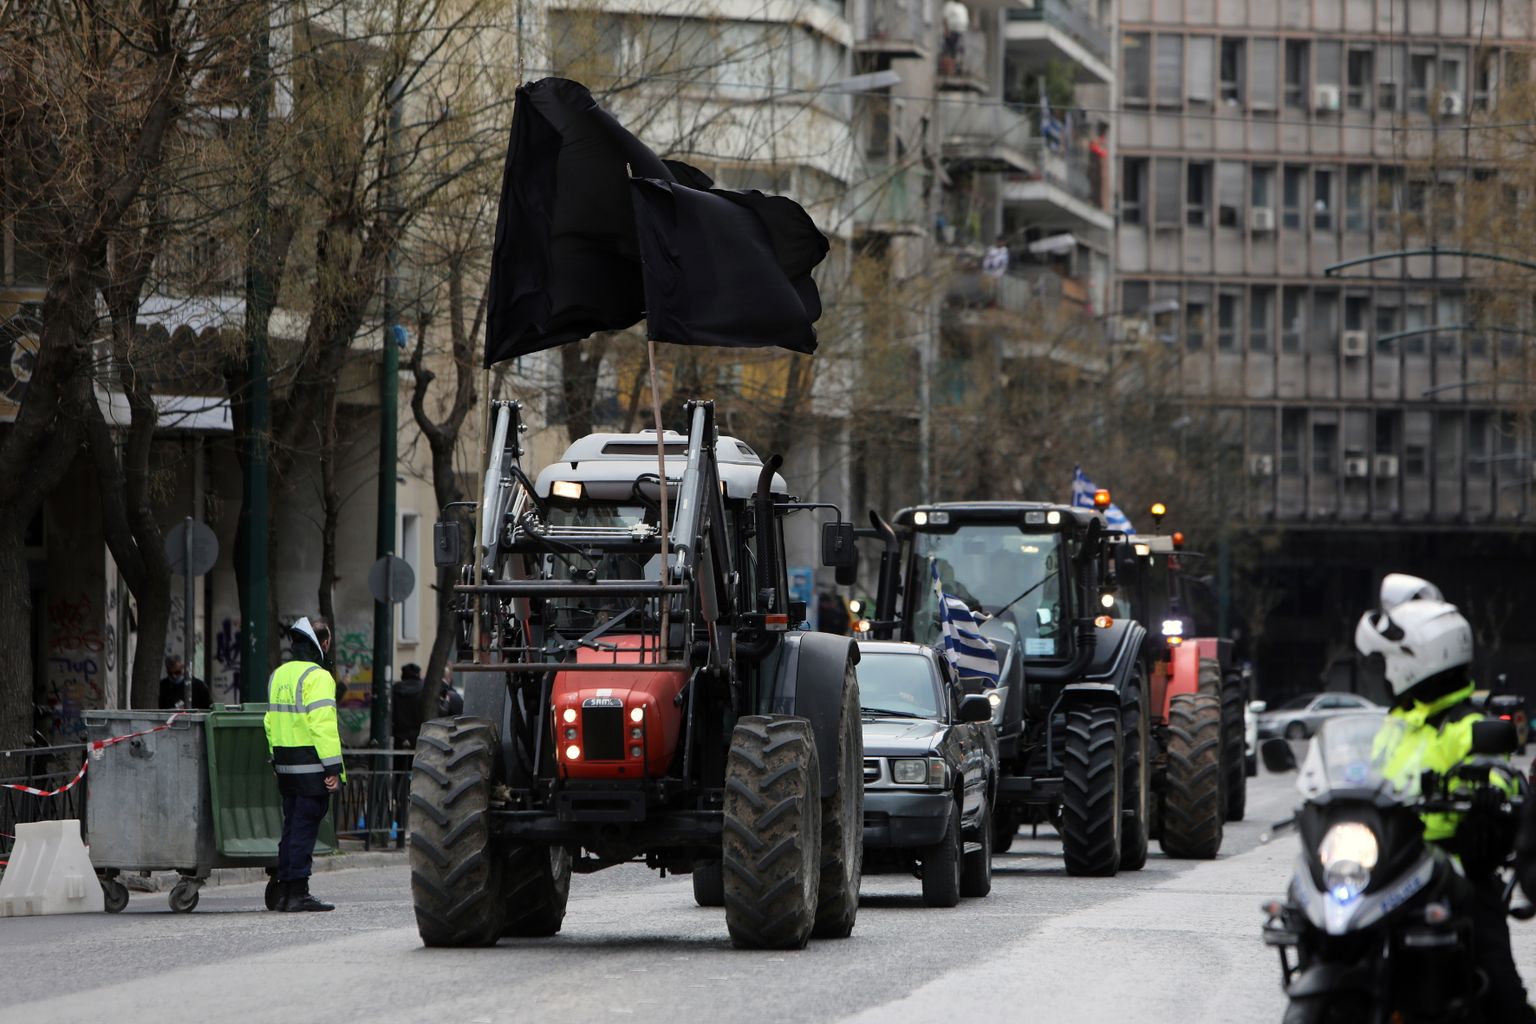 Kreeka põllumees 18. märtsil 2022 kahe musta plagu all Ateenas põllumajandusministeeriumi ees toimuvale protestiaktsioonile saabumas.